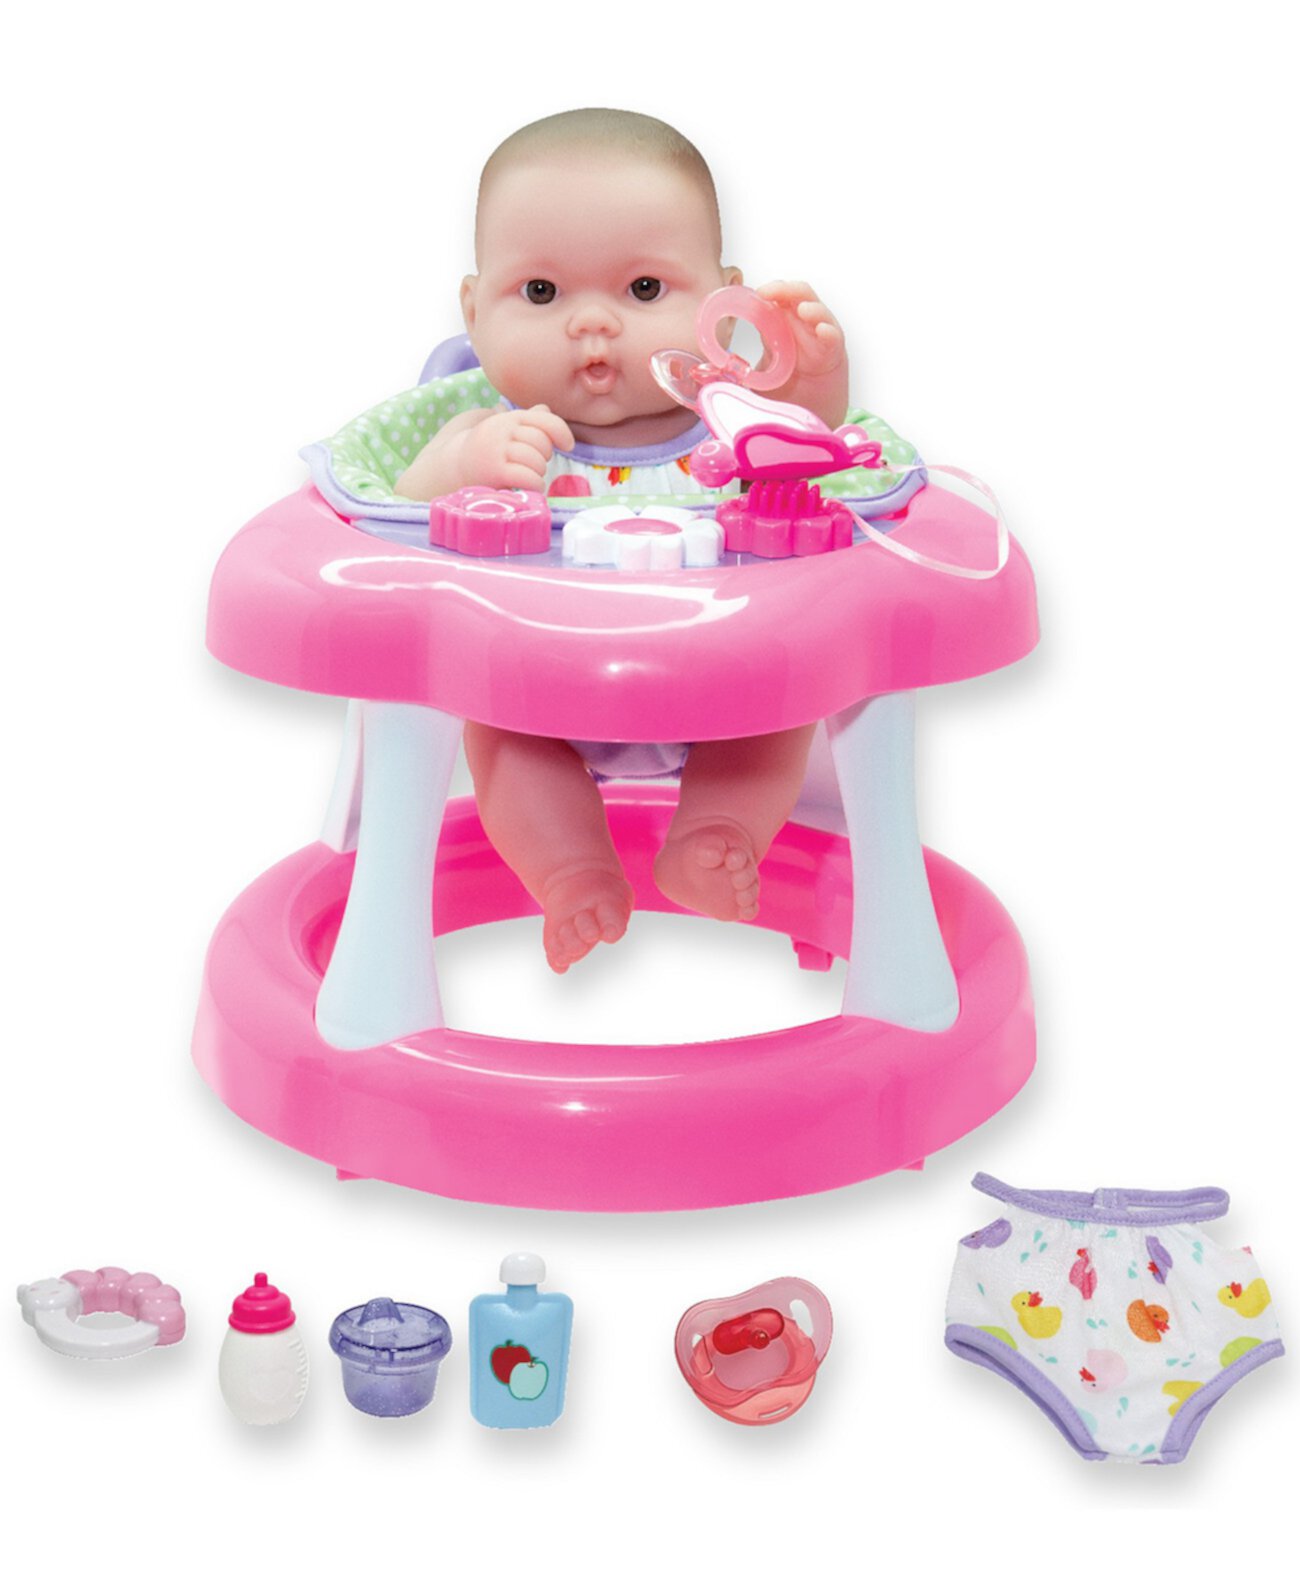 Подарочный набор ходунков для кукол Lots to Love Babies, 14 дюймов, 9 предметов JC Toys